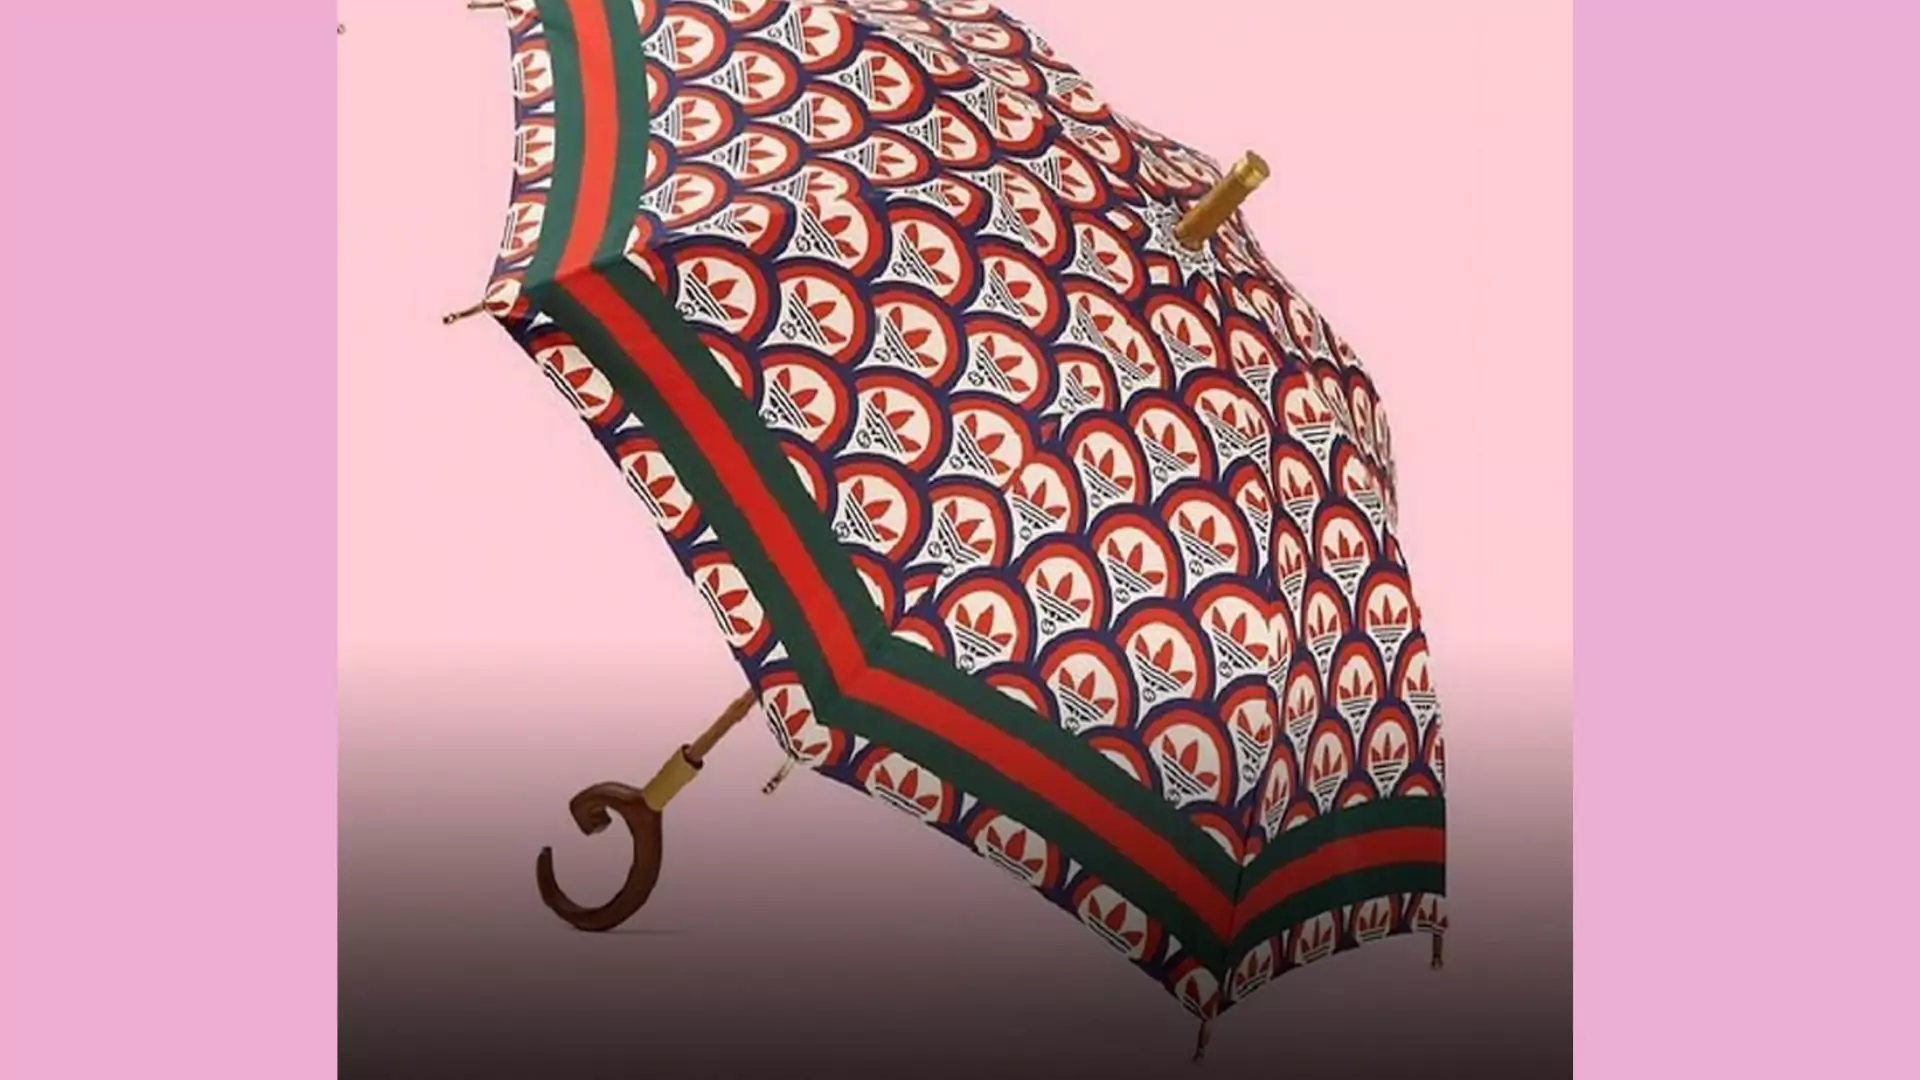 Adidas z Gucci sprzedają parasol za prawie 6 tysięcy, który nie chroni przed deszczem. Internauci są oburzeni